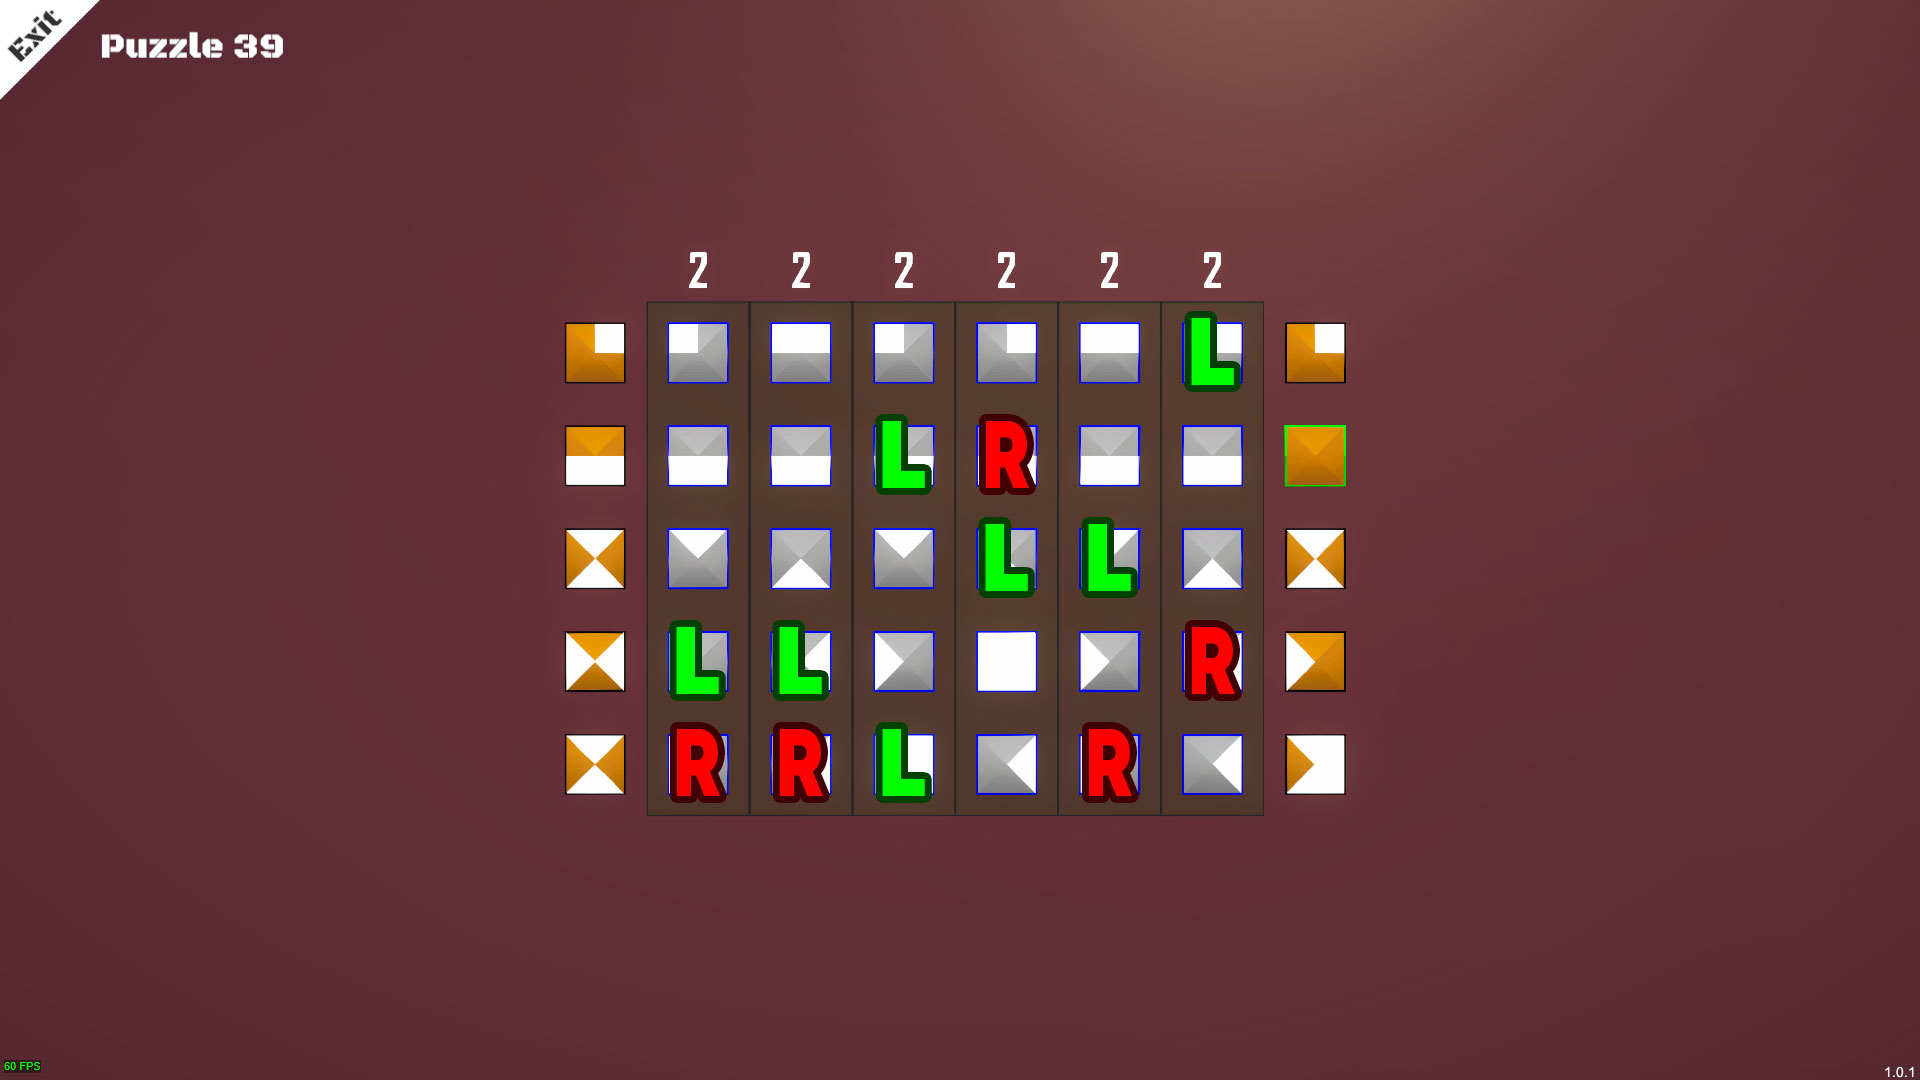 Shape Puzzle Puzzle Solution & Achievements Unlocked - Level 31-40 - 1C7B403